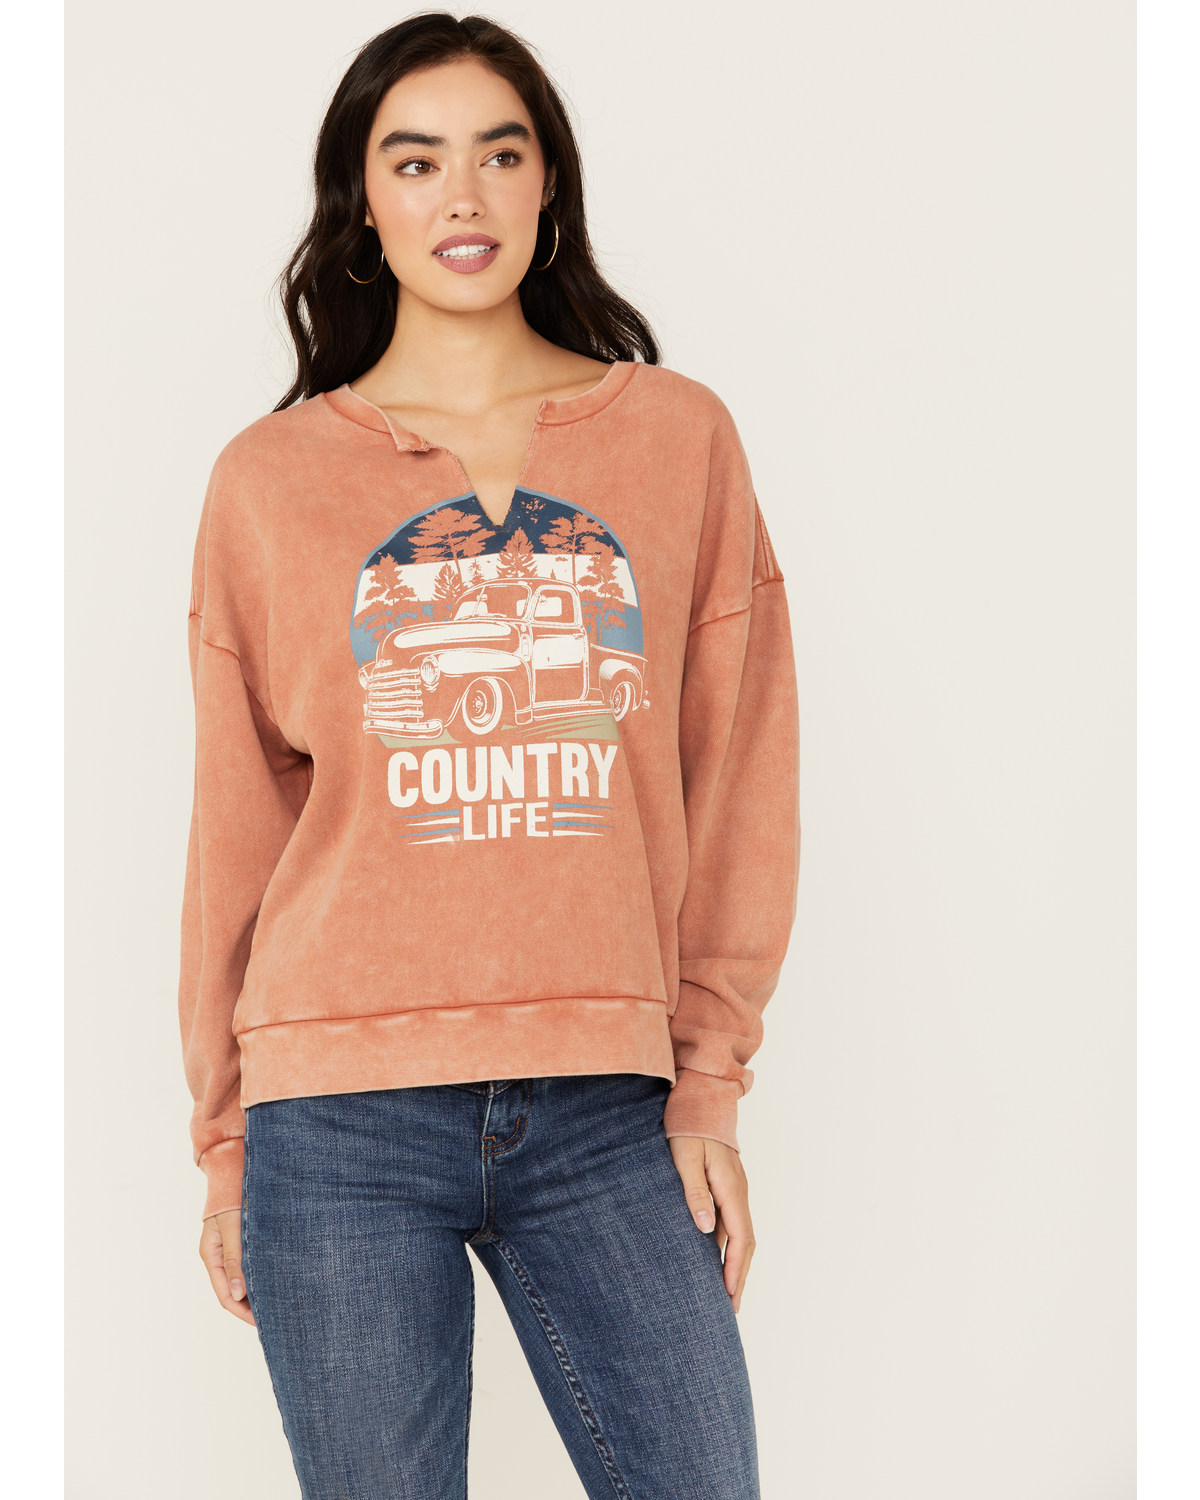 Cleo + Wolf Women's Country Life Wash Graphic Sweatshirt